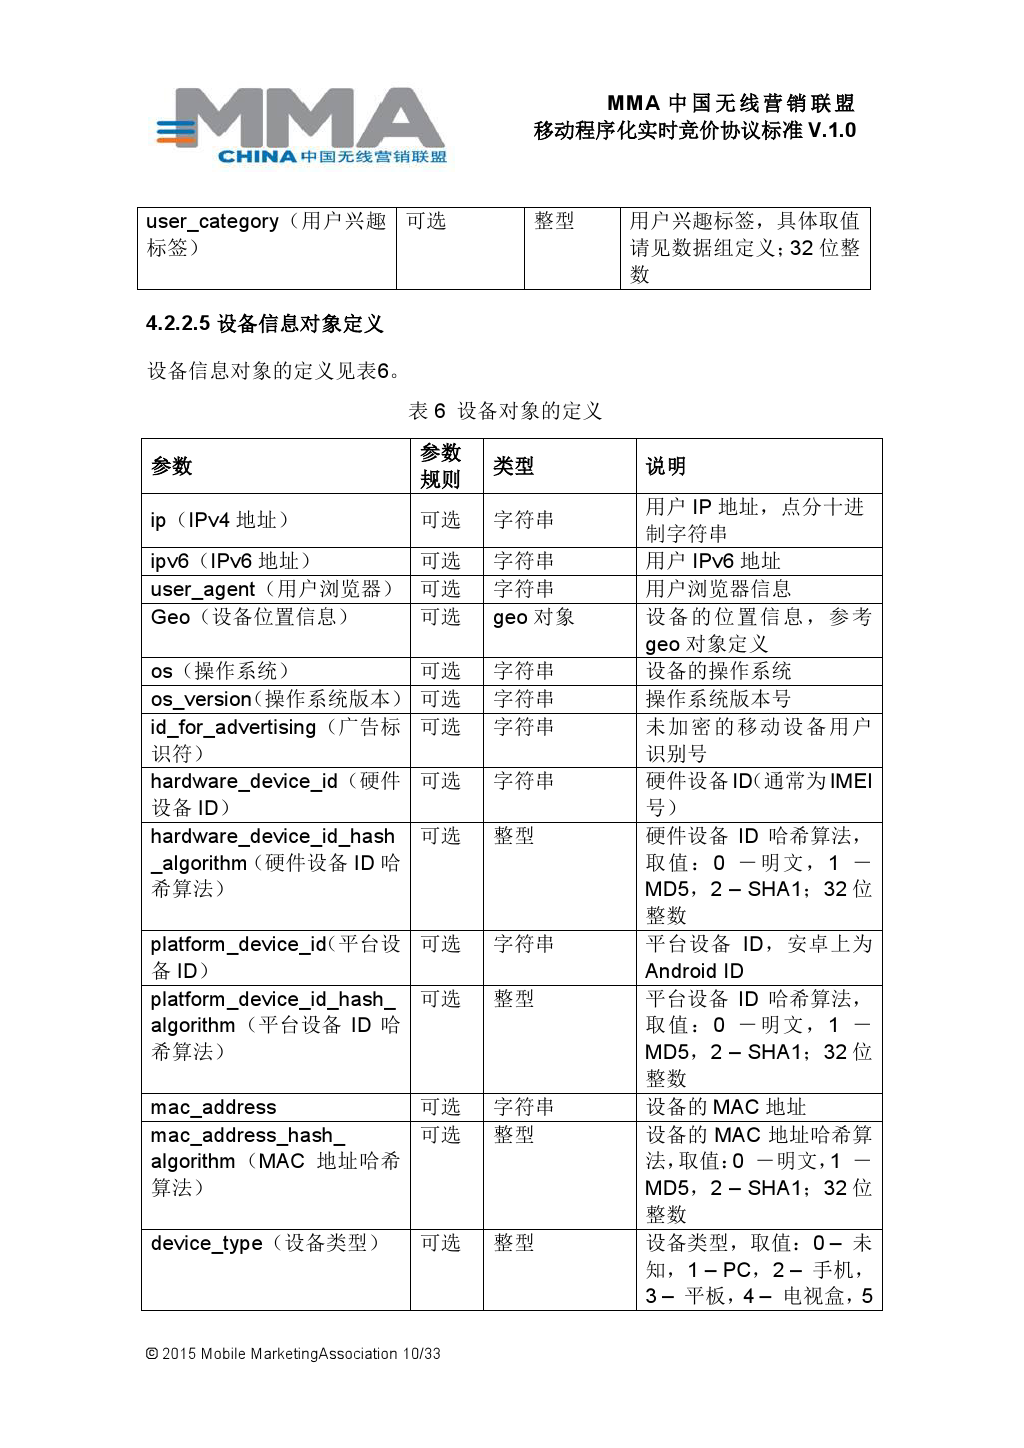 MMA中国无线营销联盟移动程序化实时竞价协议标准V.1.0_000011